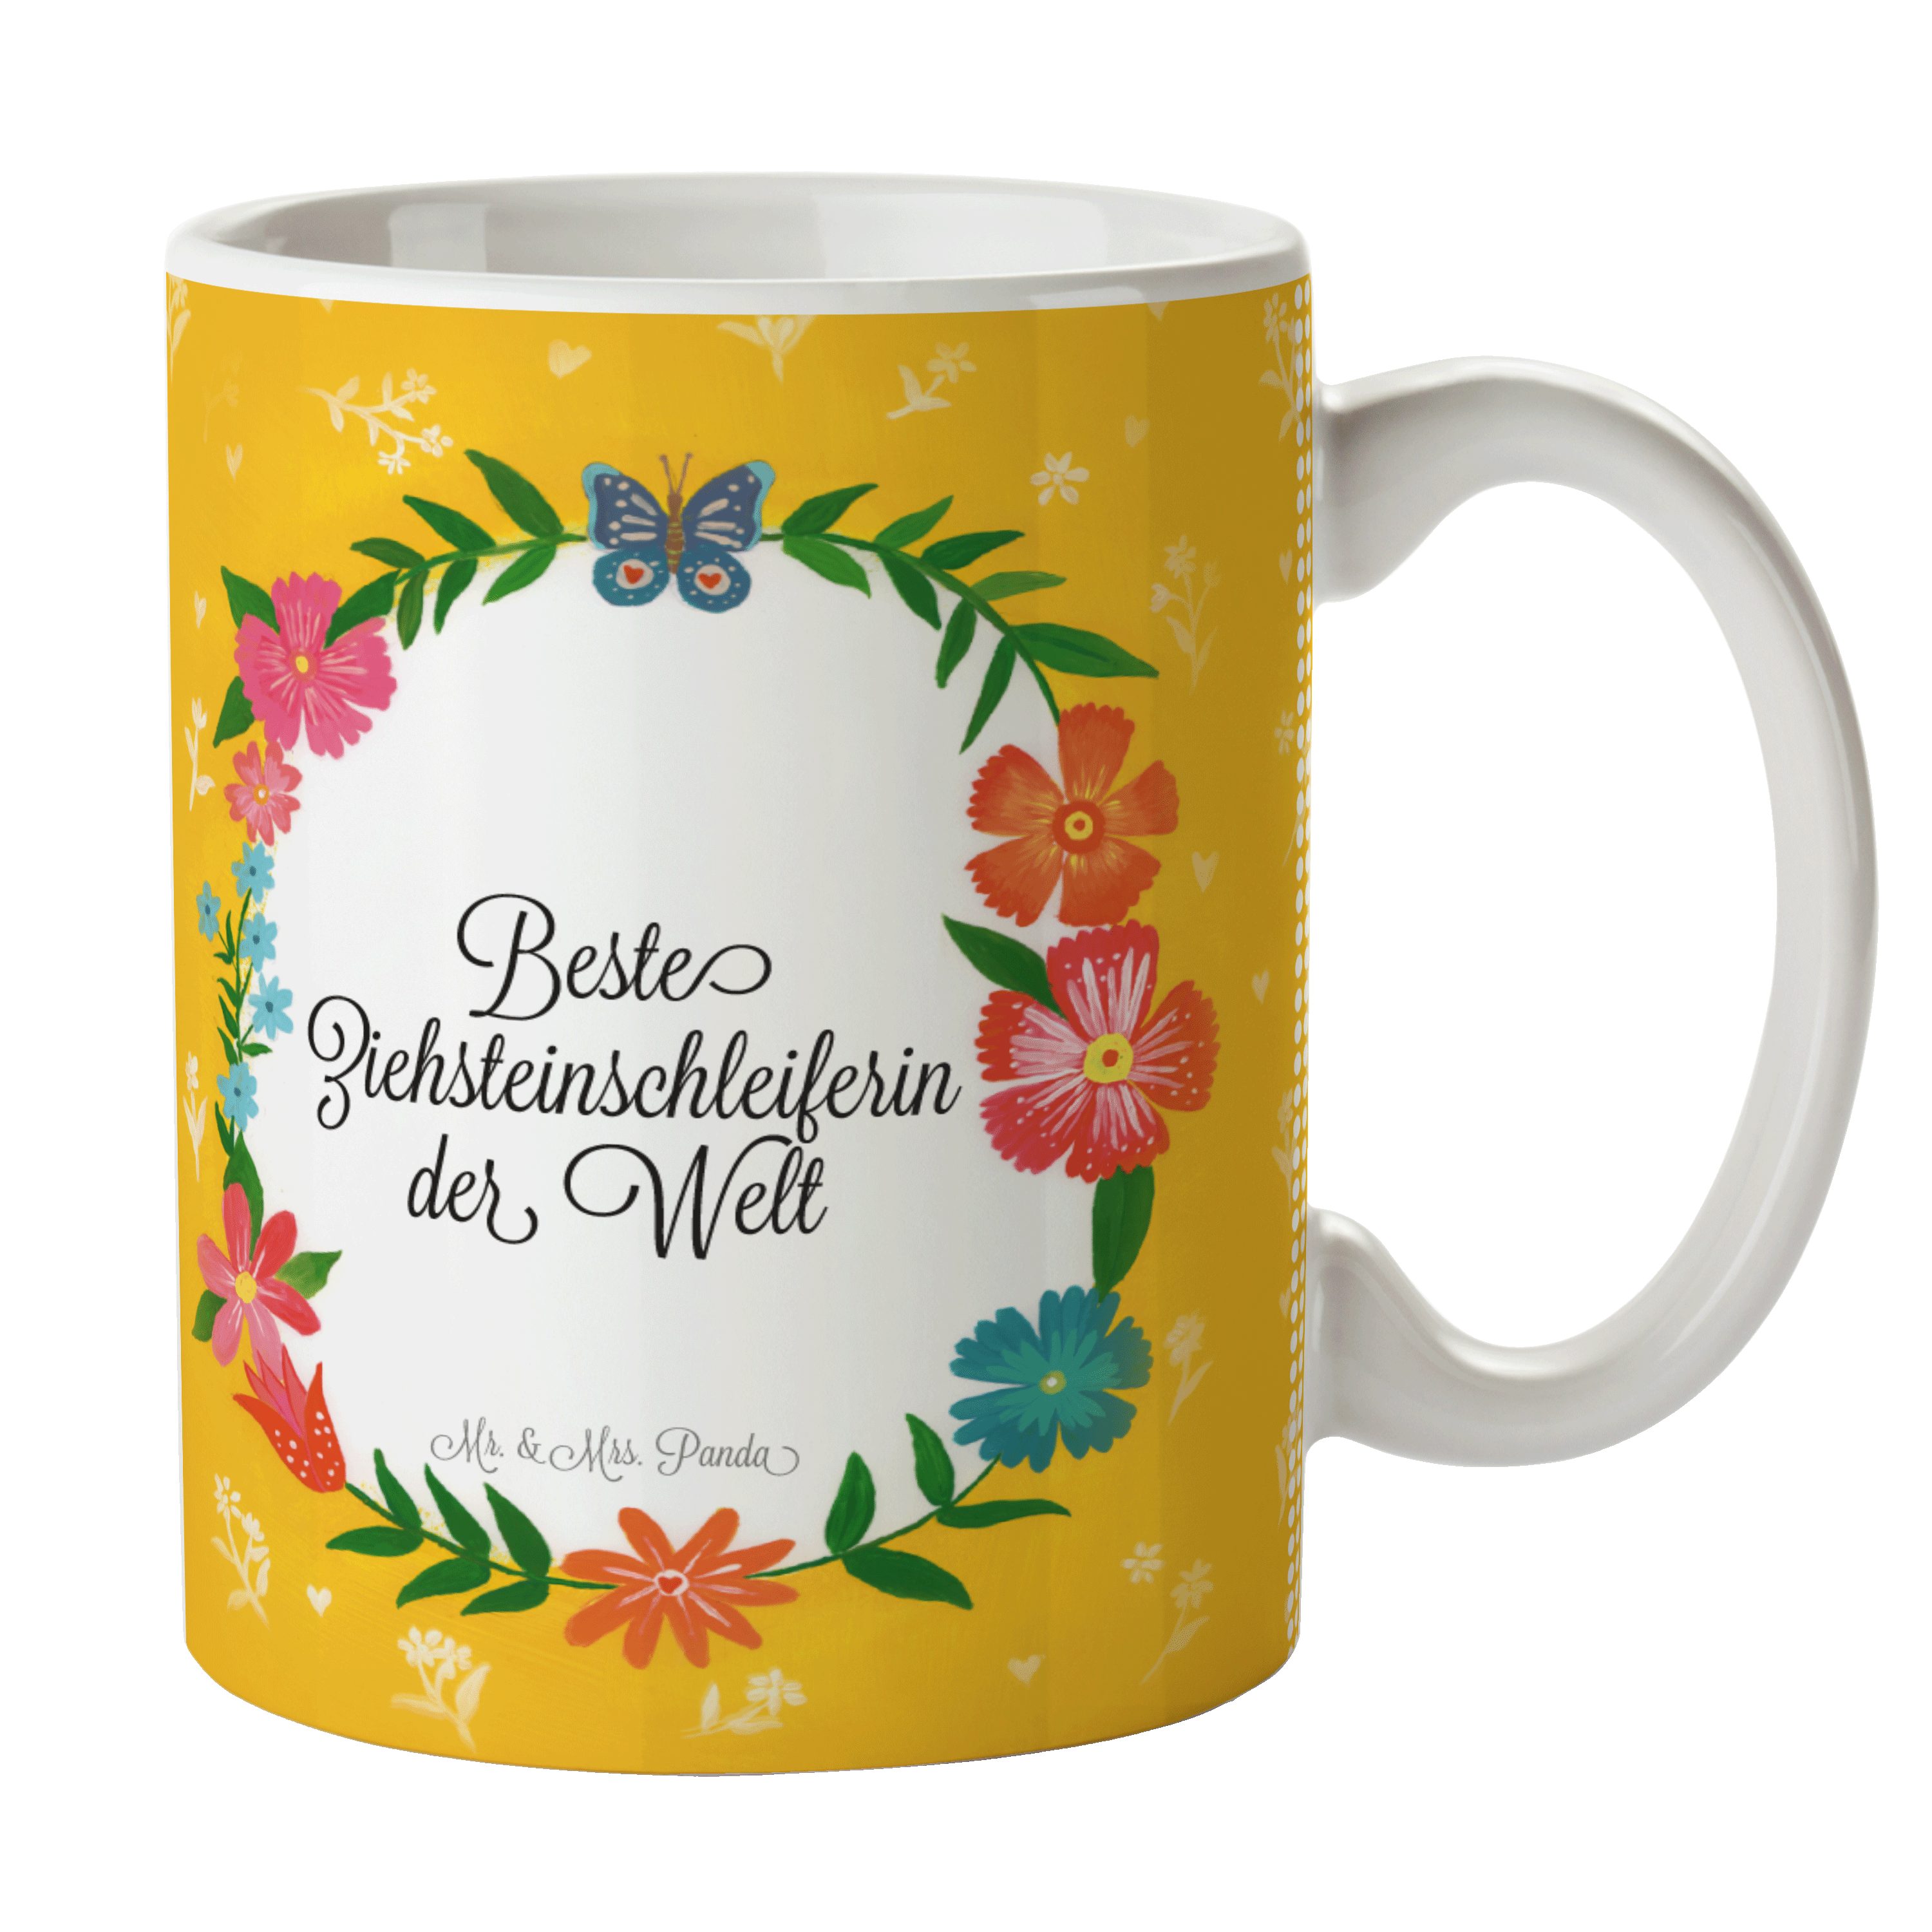 Ziehsteinschleiferin & G, Tasse - Geschenk, Mrs. Diplom, Keramik Mr. Panda Kaffeebecher, Kaffeetasse,